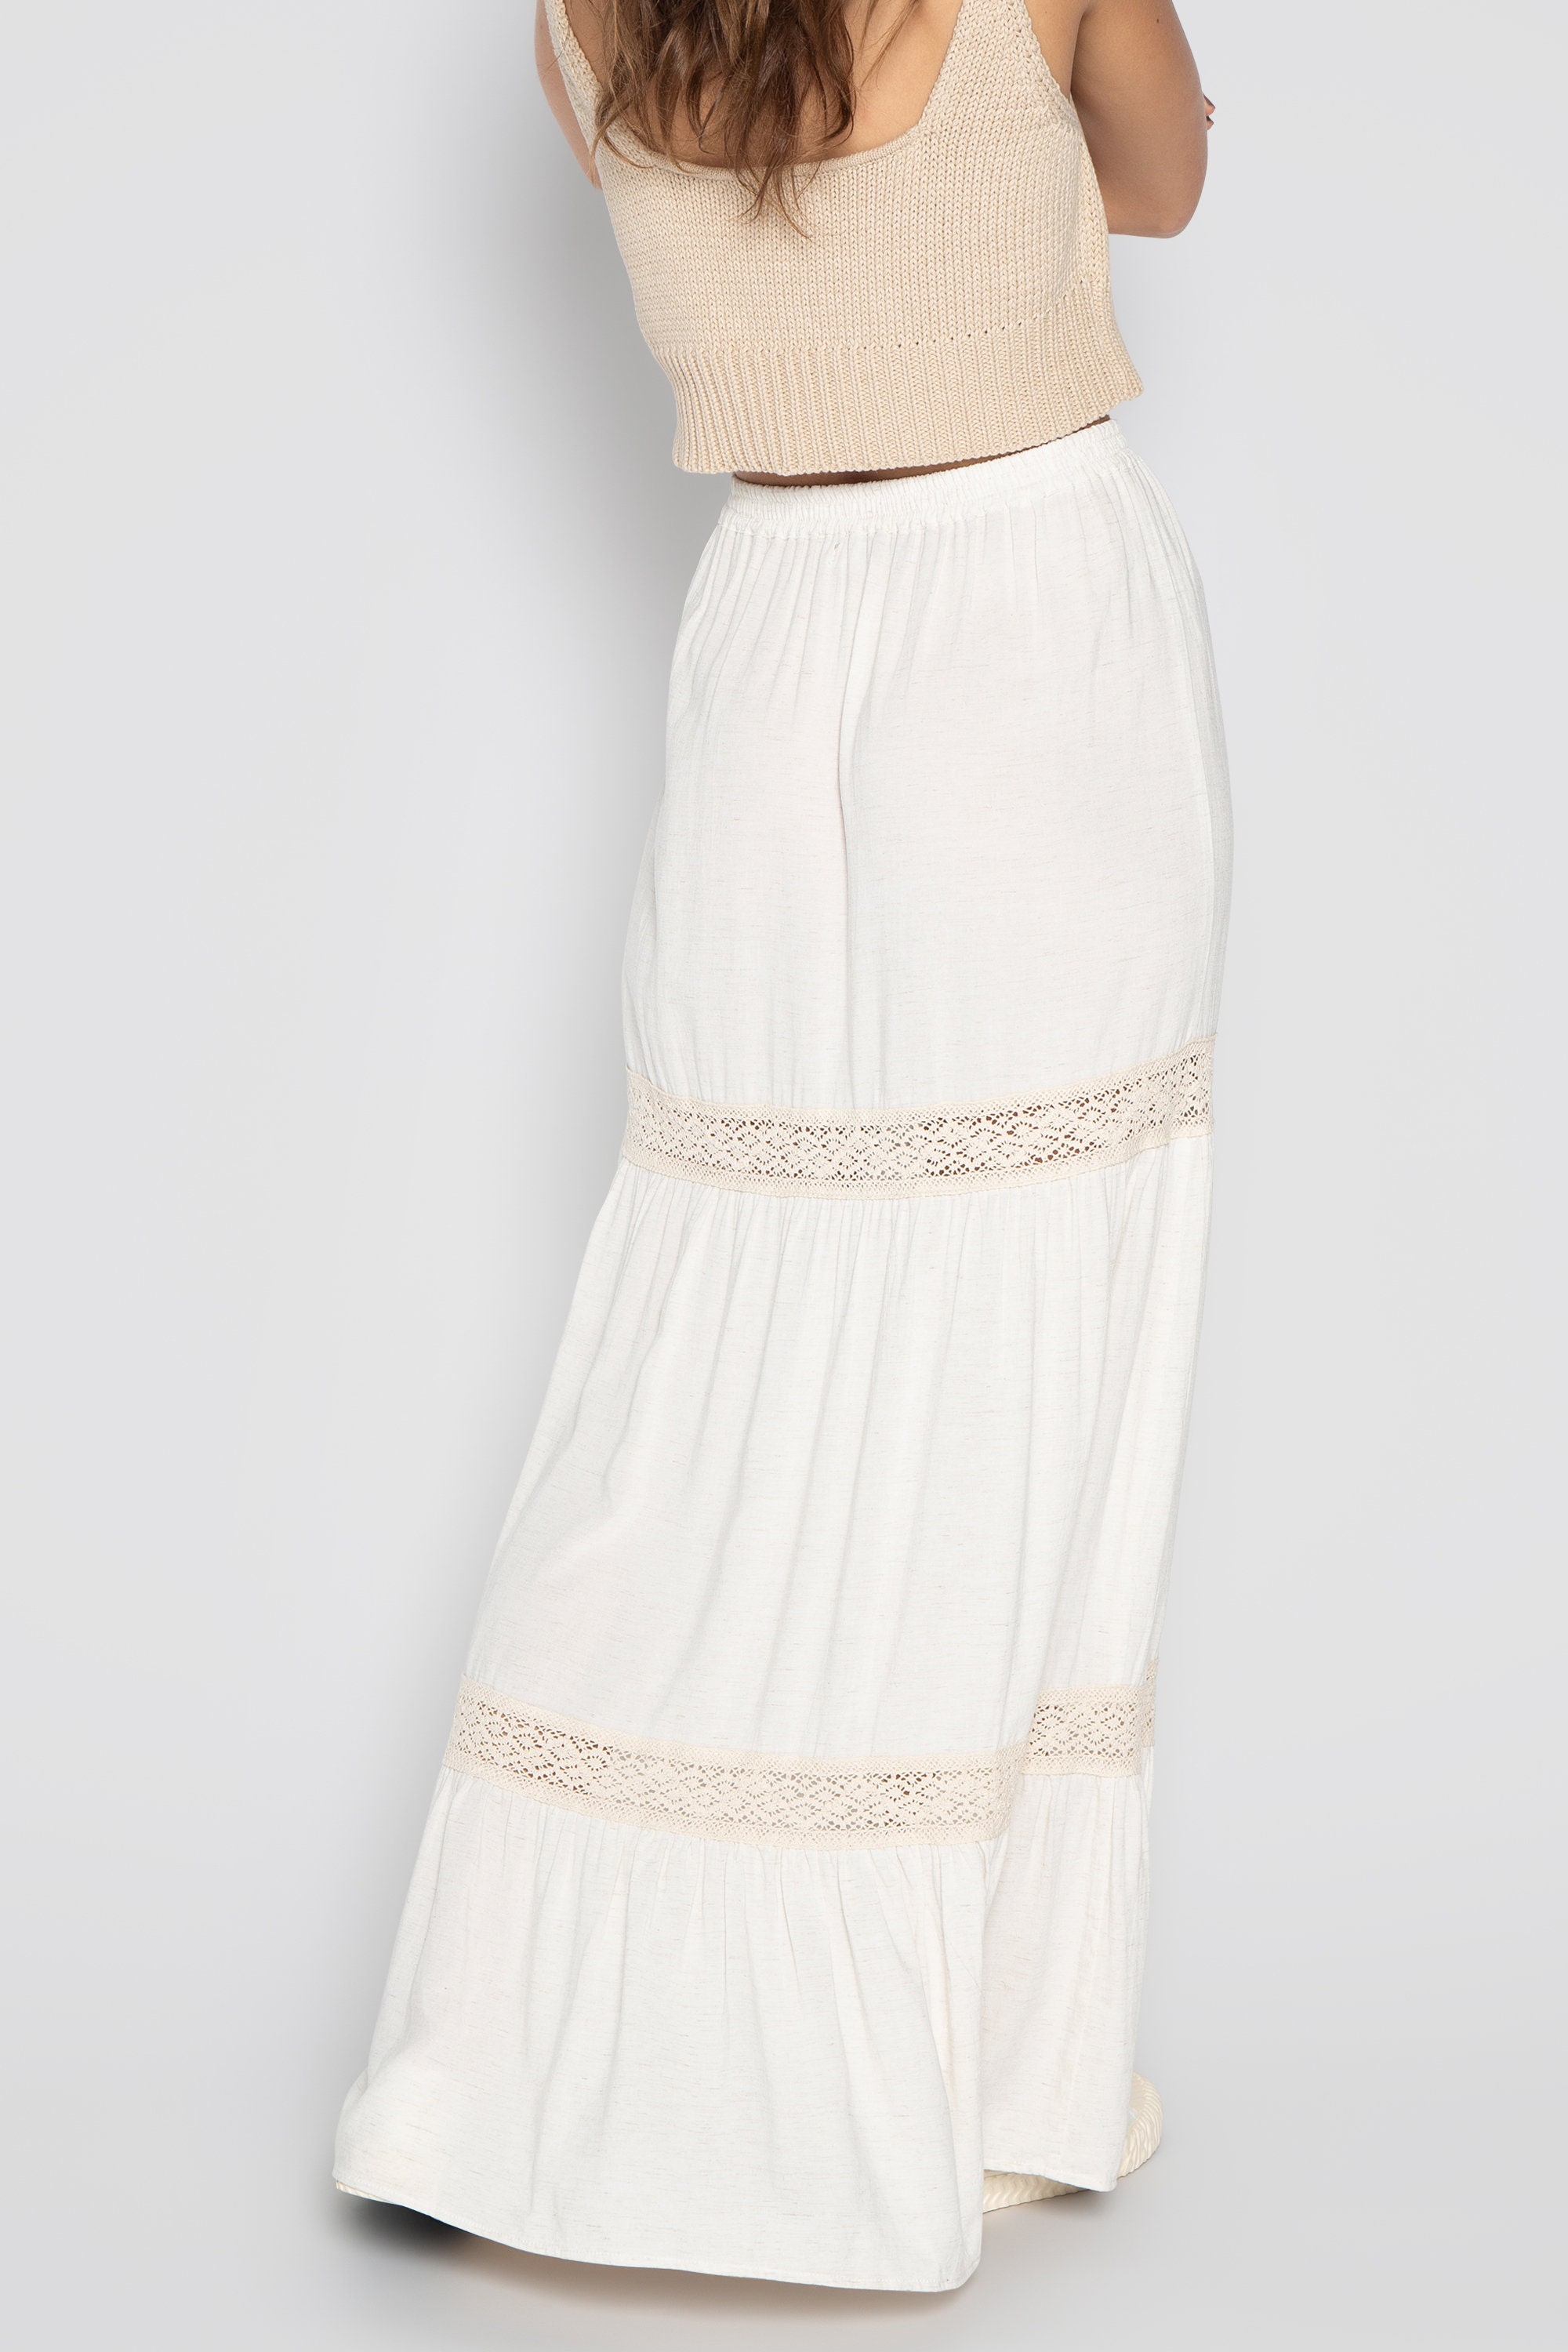 Linen Maxi Skirt White Summer Skirt Goddess Skirt Linen | Etsy